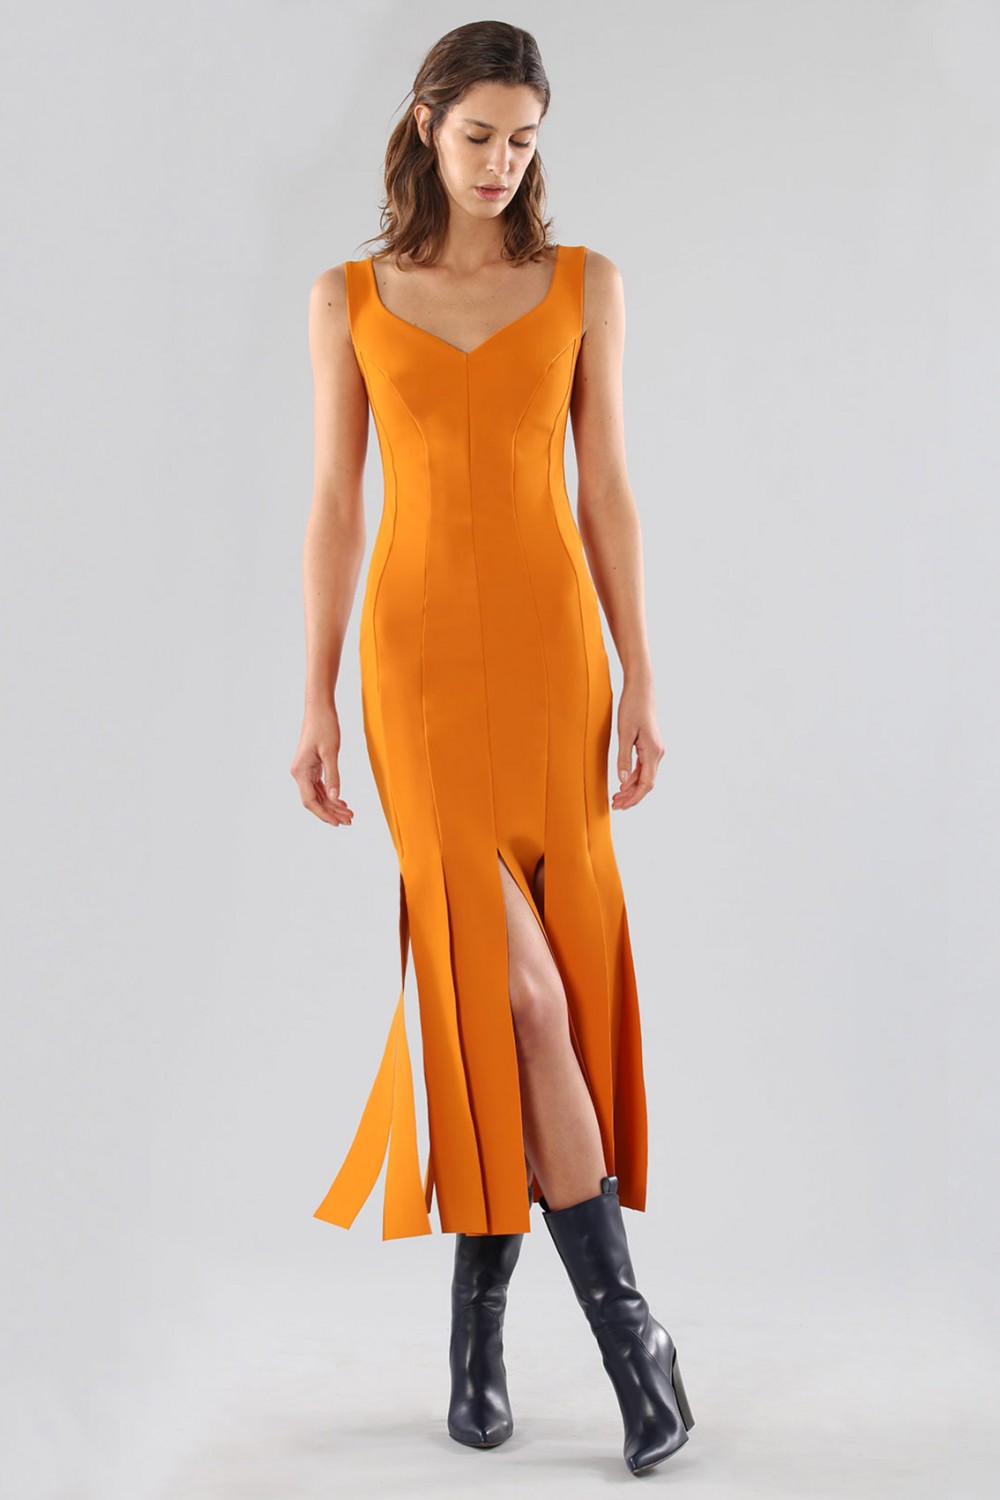 Vendita Abbigliamento Firmato - Abito arancione al ginocchio con frange - Chiara Boni - Drexcode11